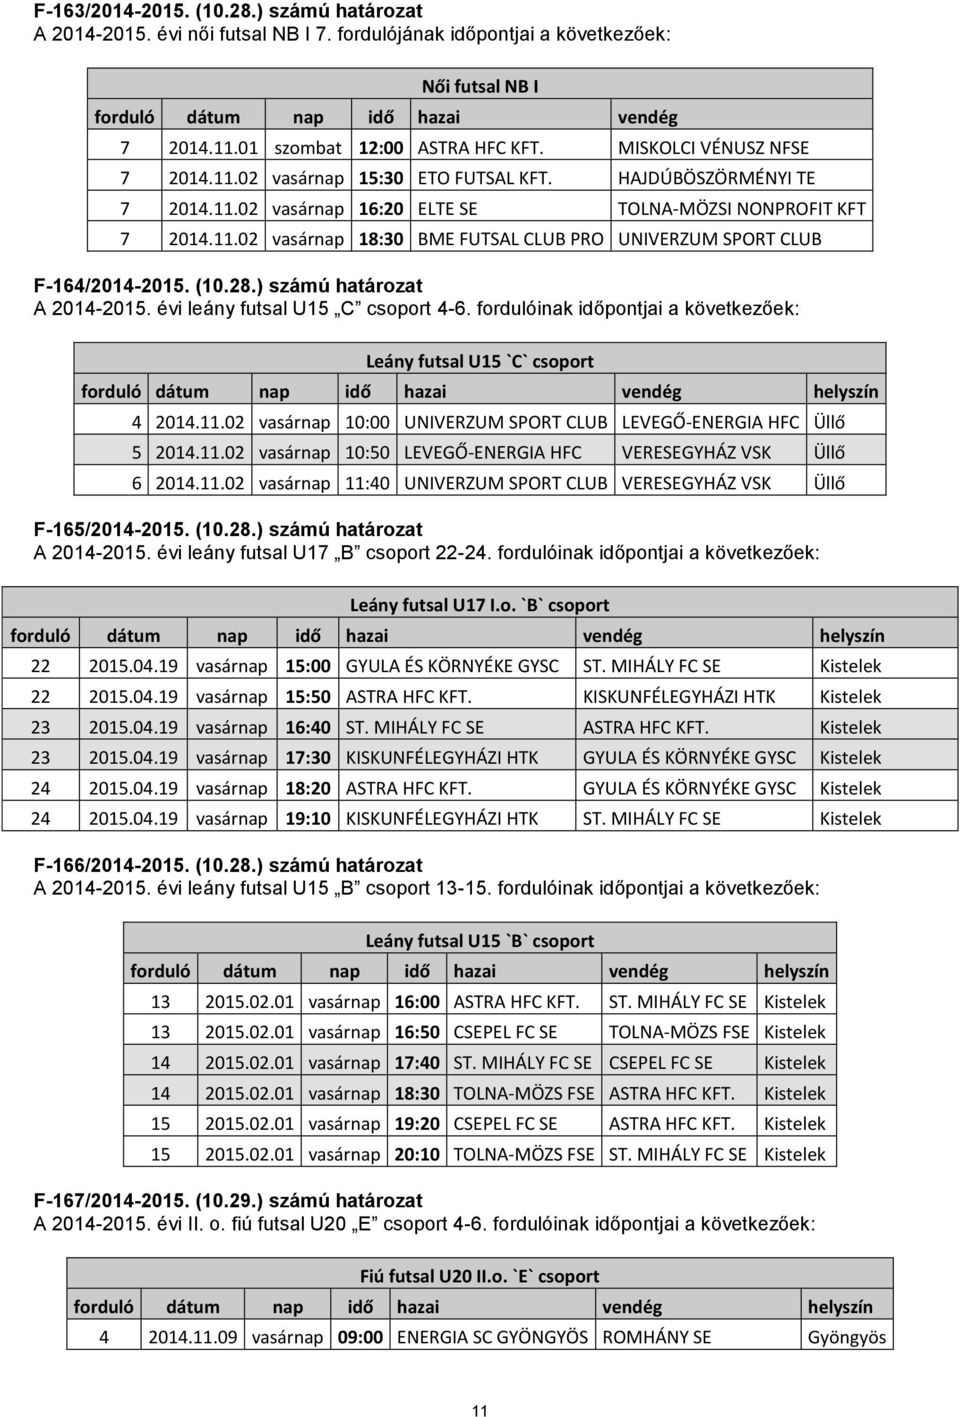 (10.28.) számú határozat A 2014-2015. évi leány futsal U15 C csoport 4-6. fordulóinak időpontjai a következőek: Leány futsal U15 `C` csoport 4 2014.11.